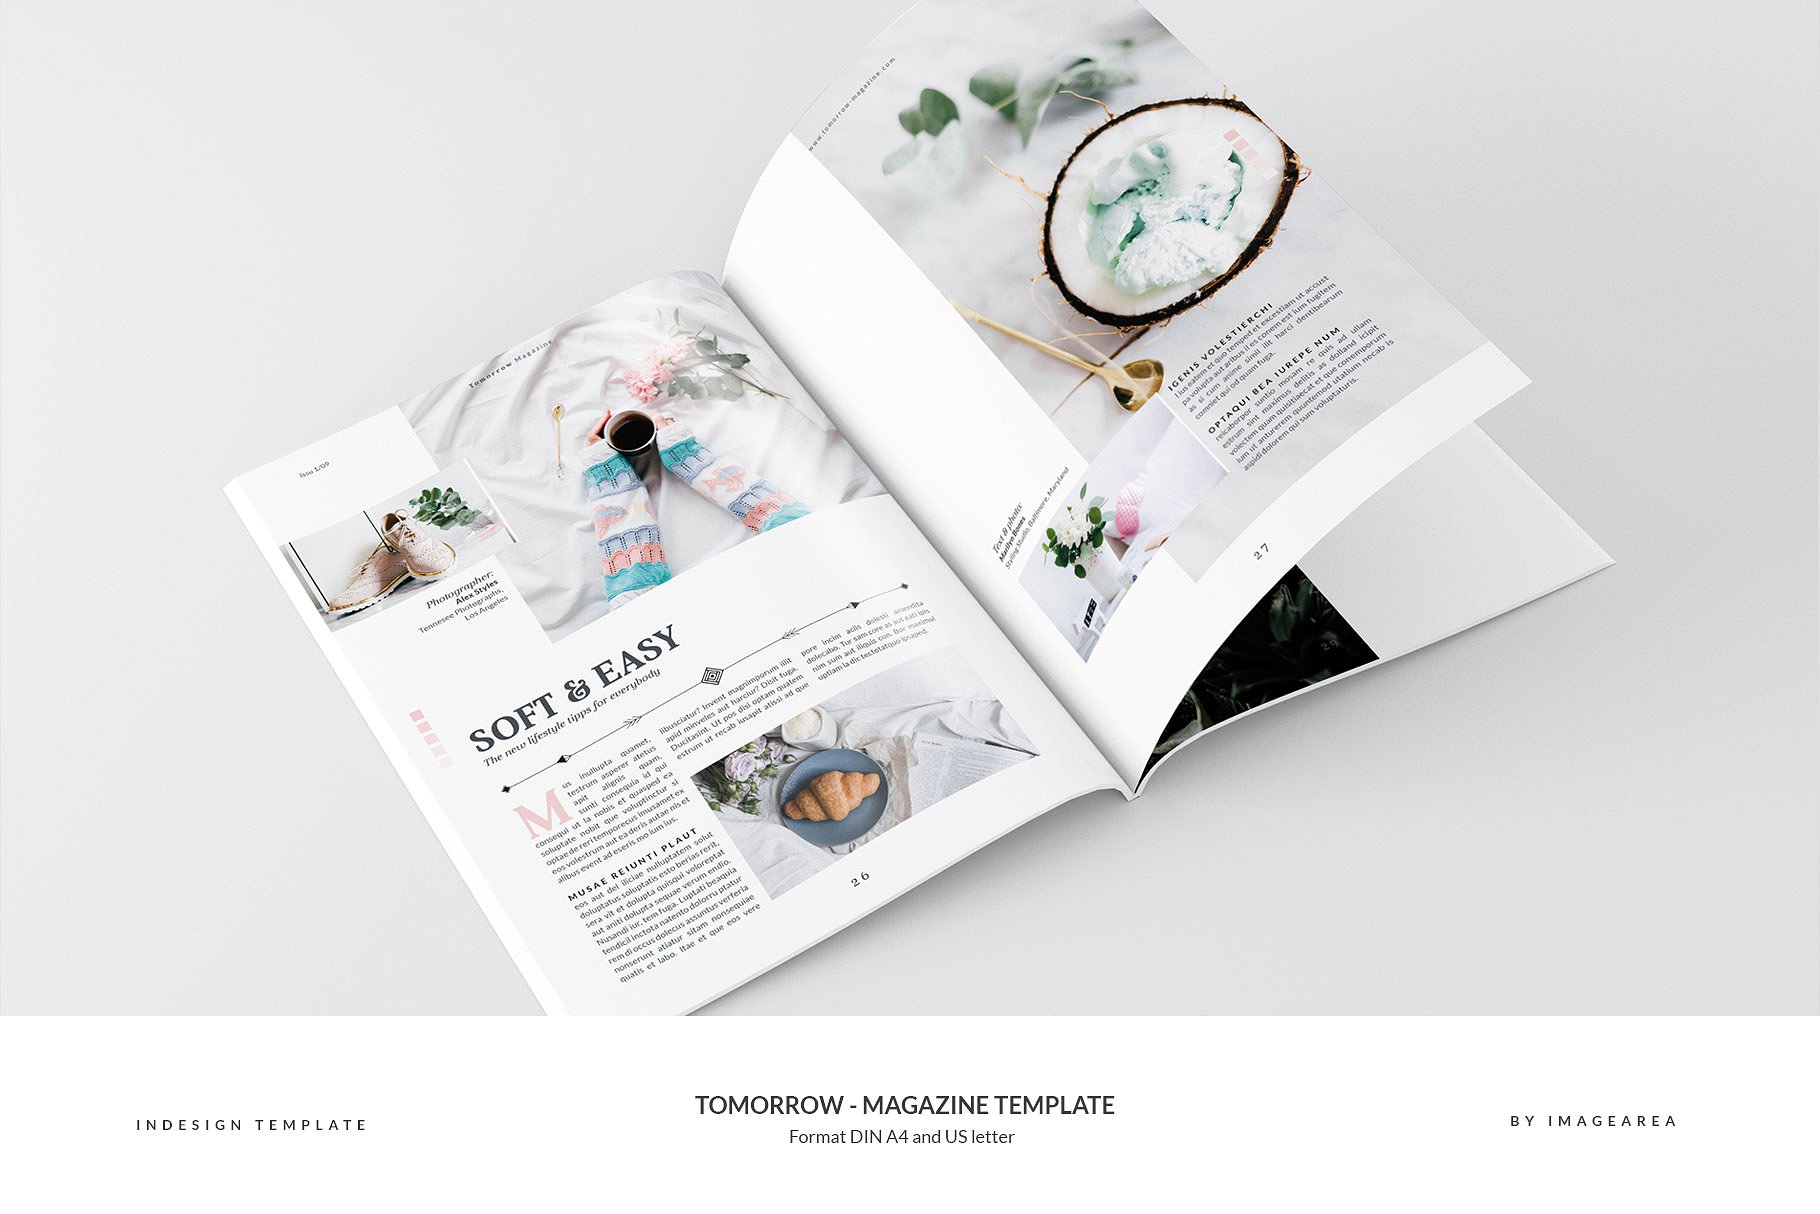 图文并茂排版优秀的专业杂志模板 Tomorrow – Magazine Template插图(14)